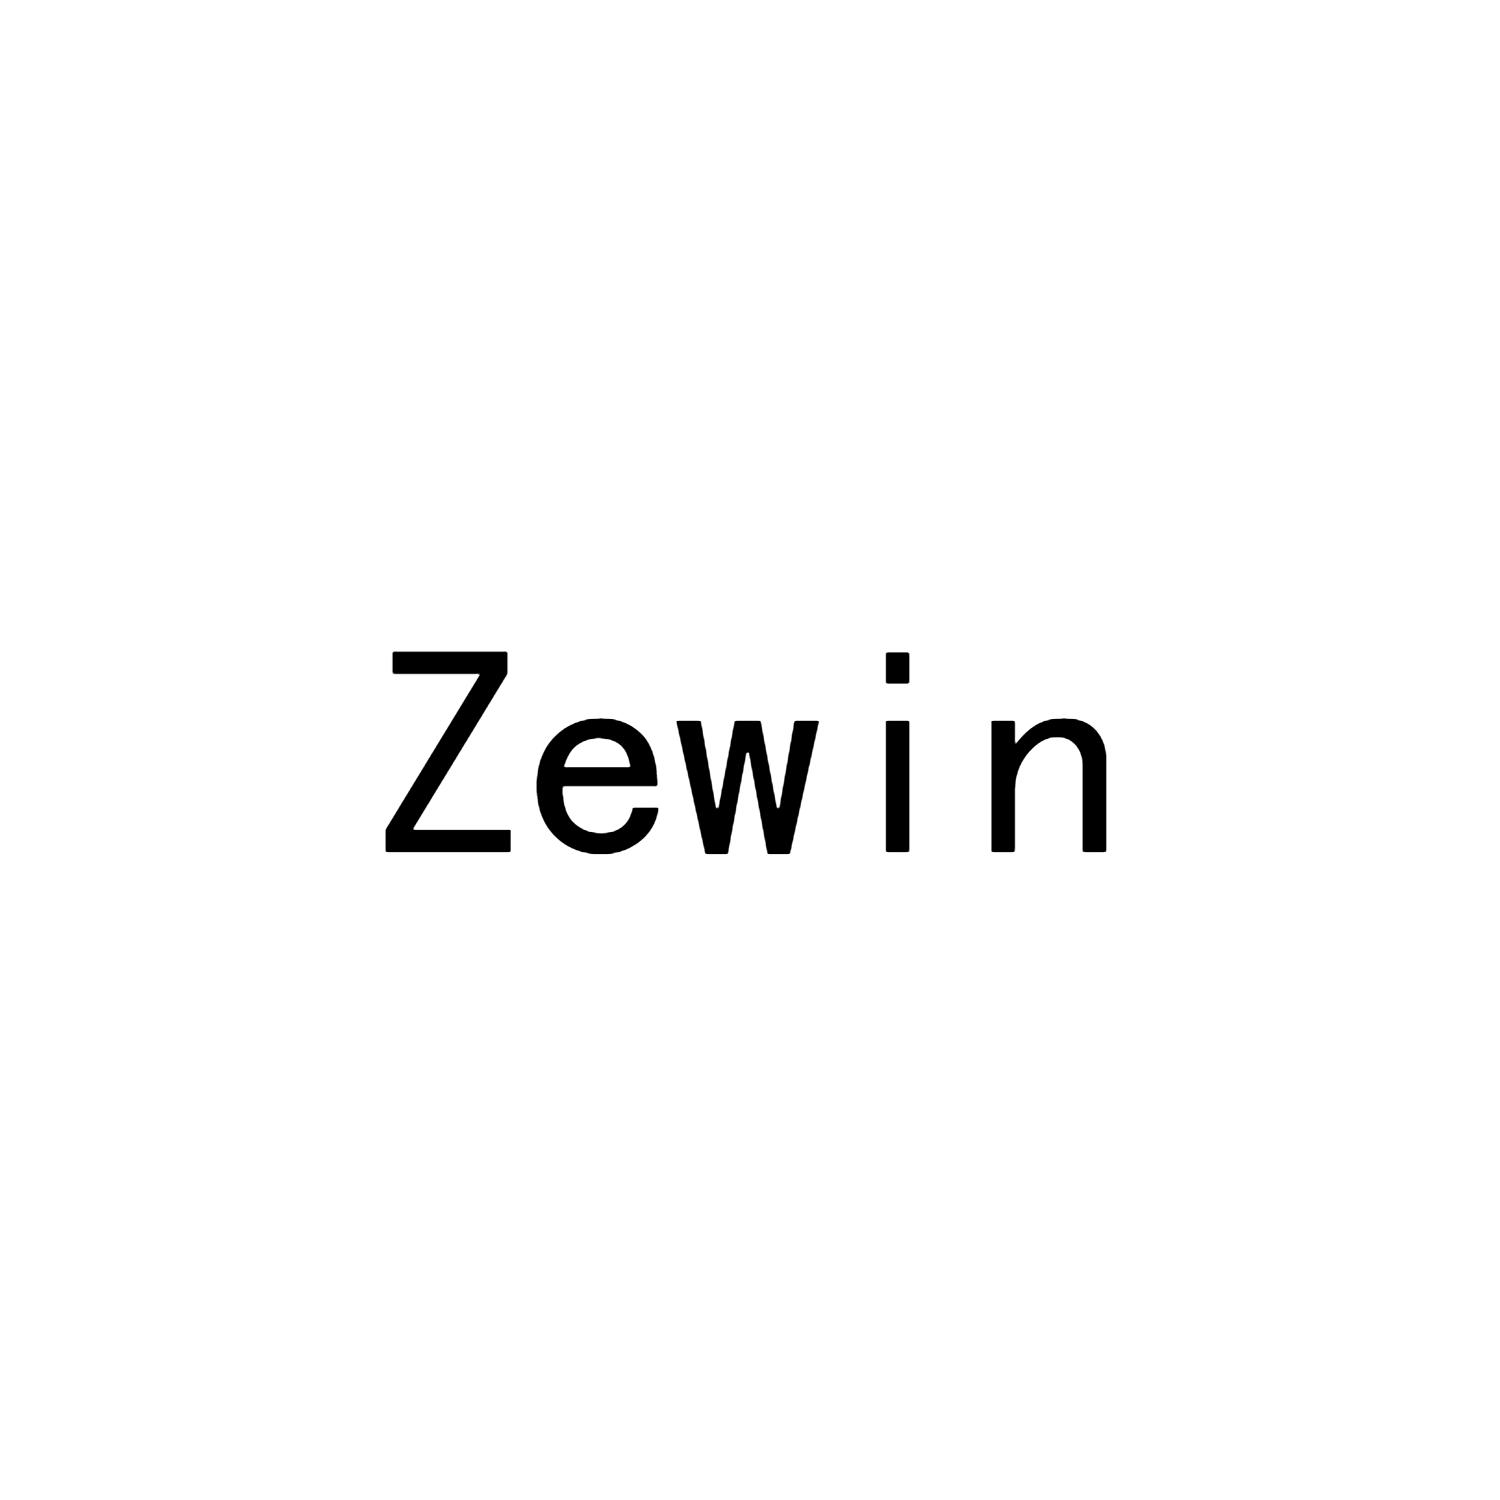 ZEWIN